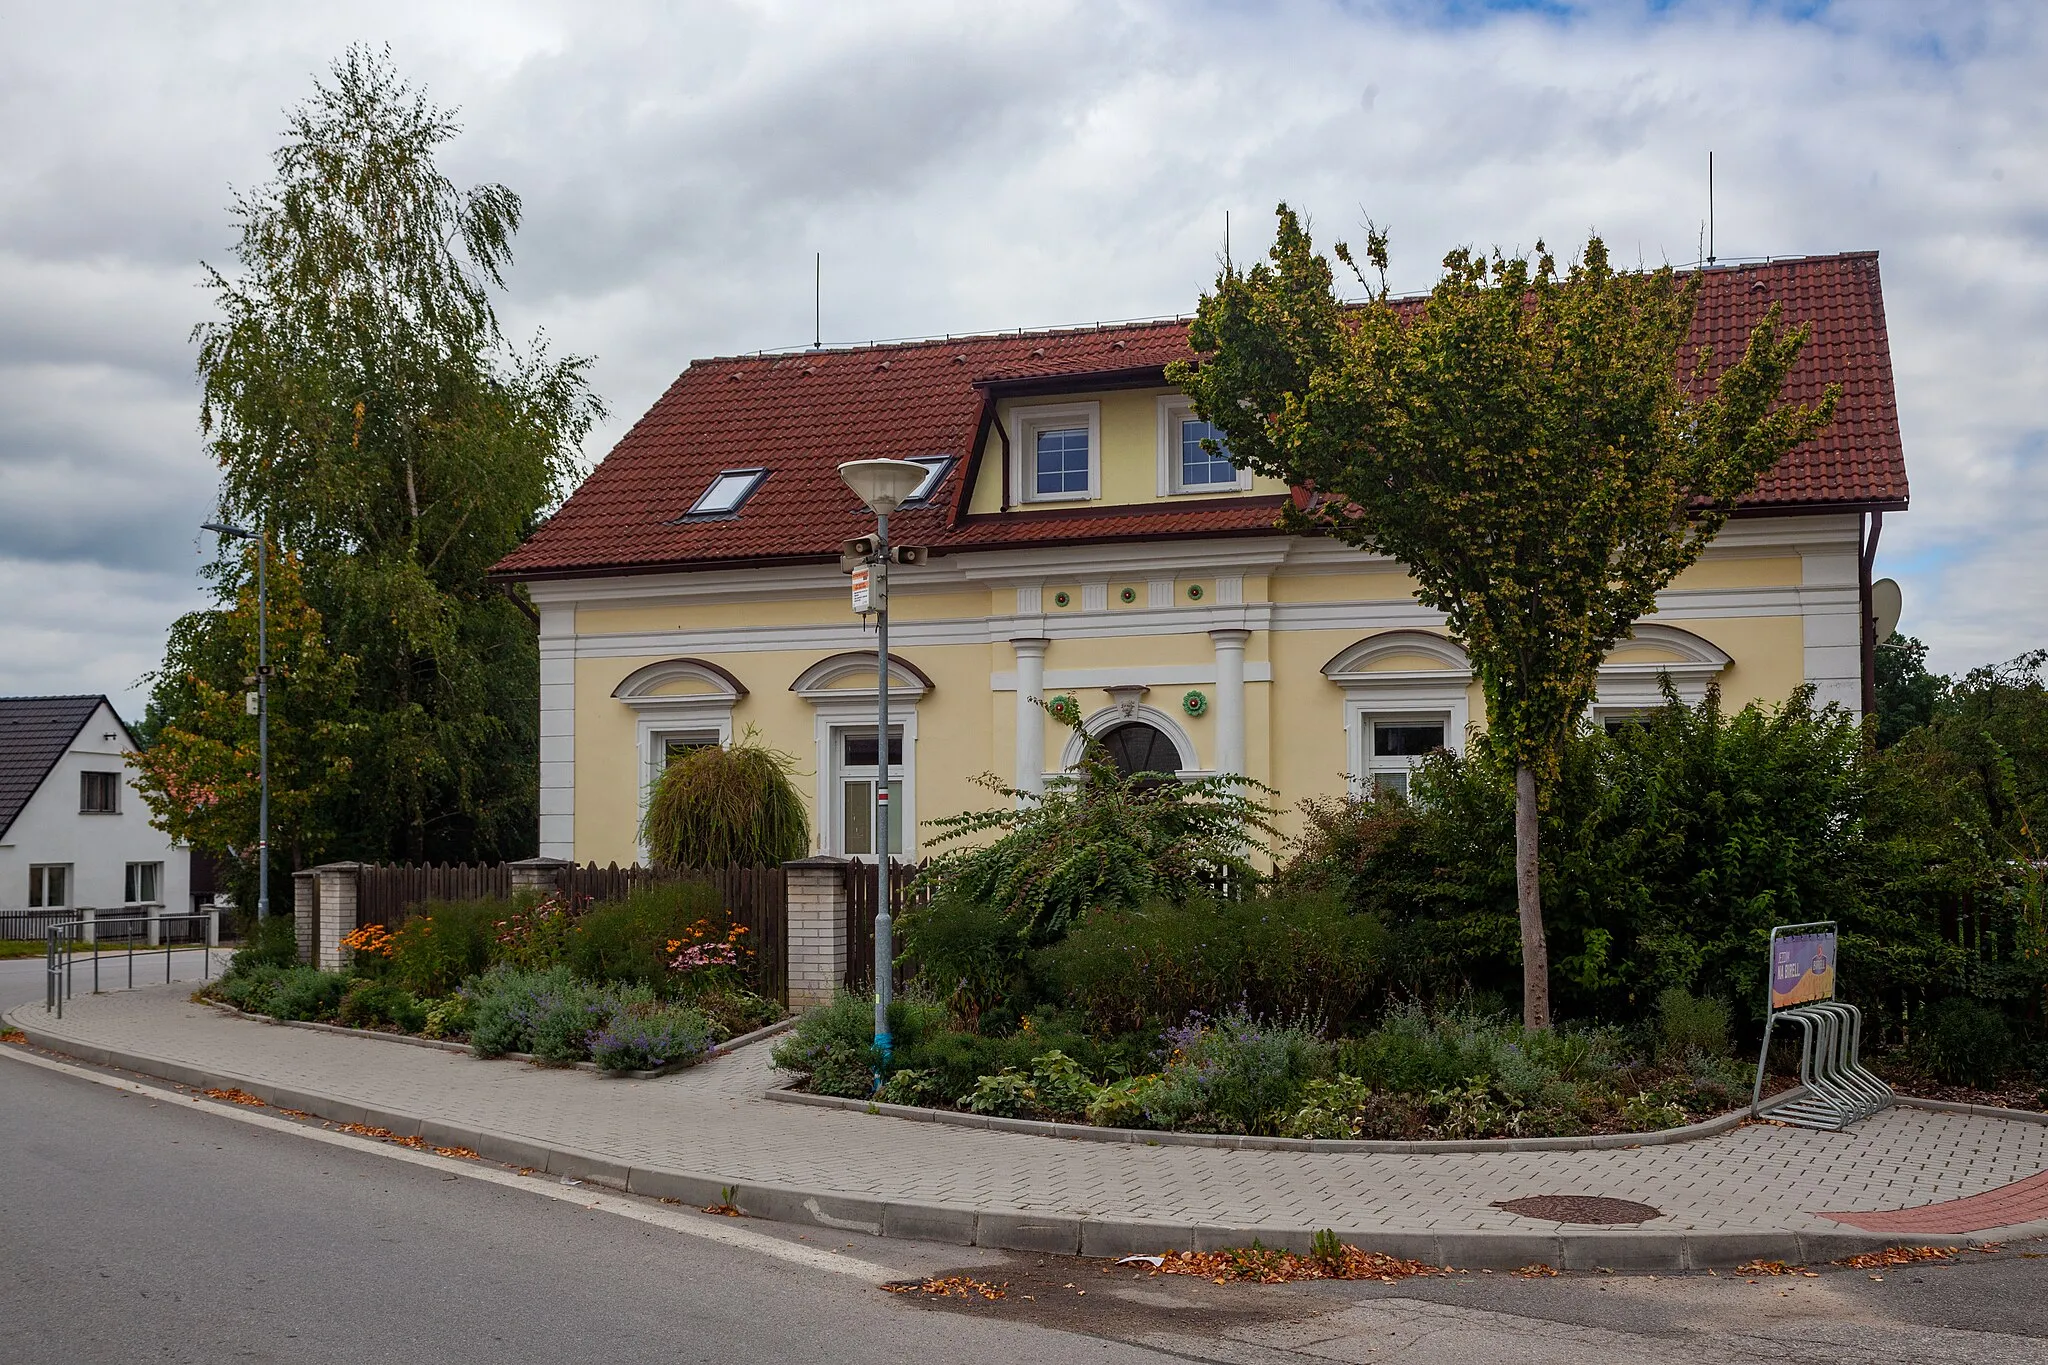 Photo showing: Villa in Neznašov (Všemyslice), České Budějovice District,  South Bohemian Region, Czechia (2021)